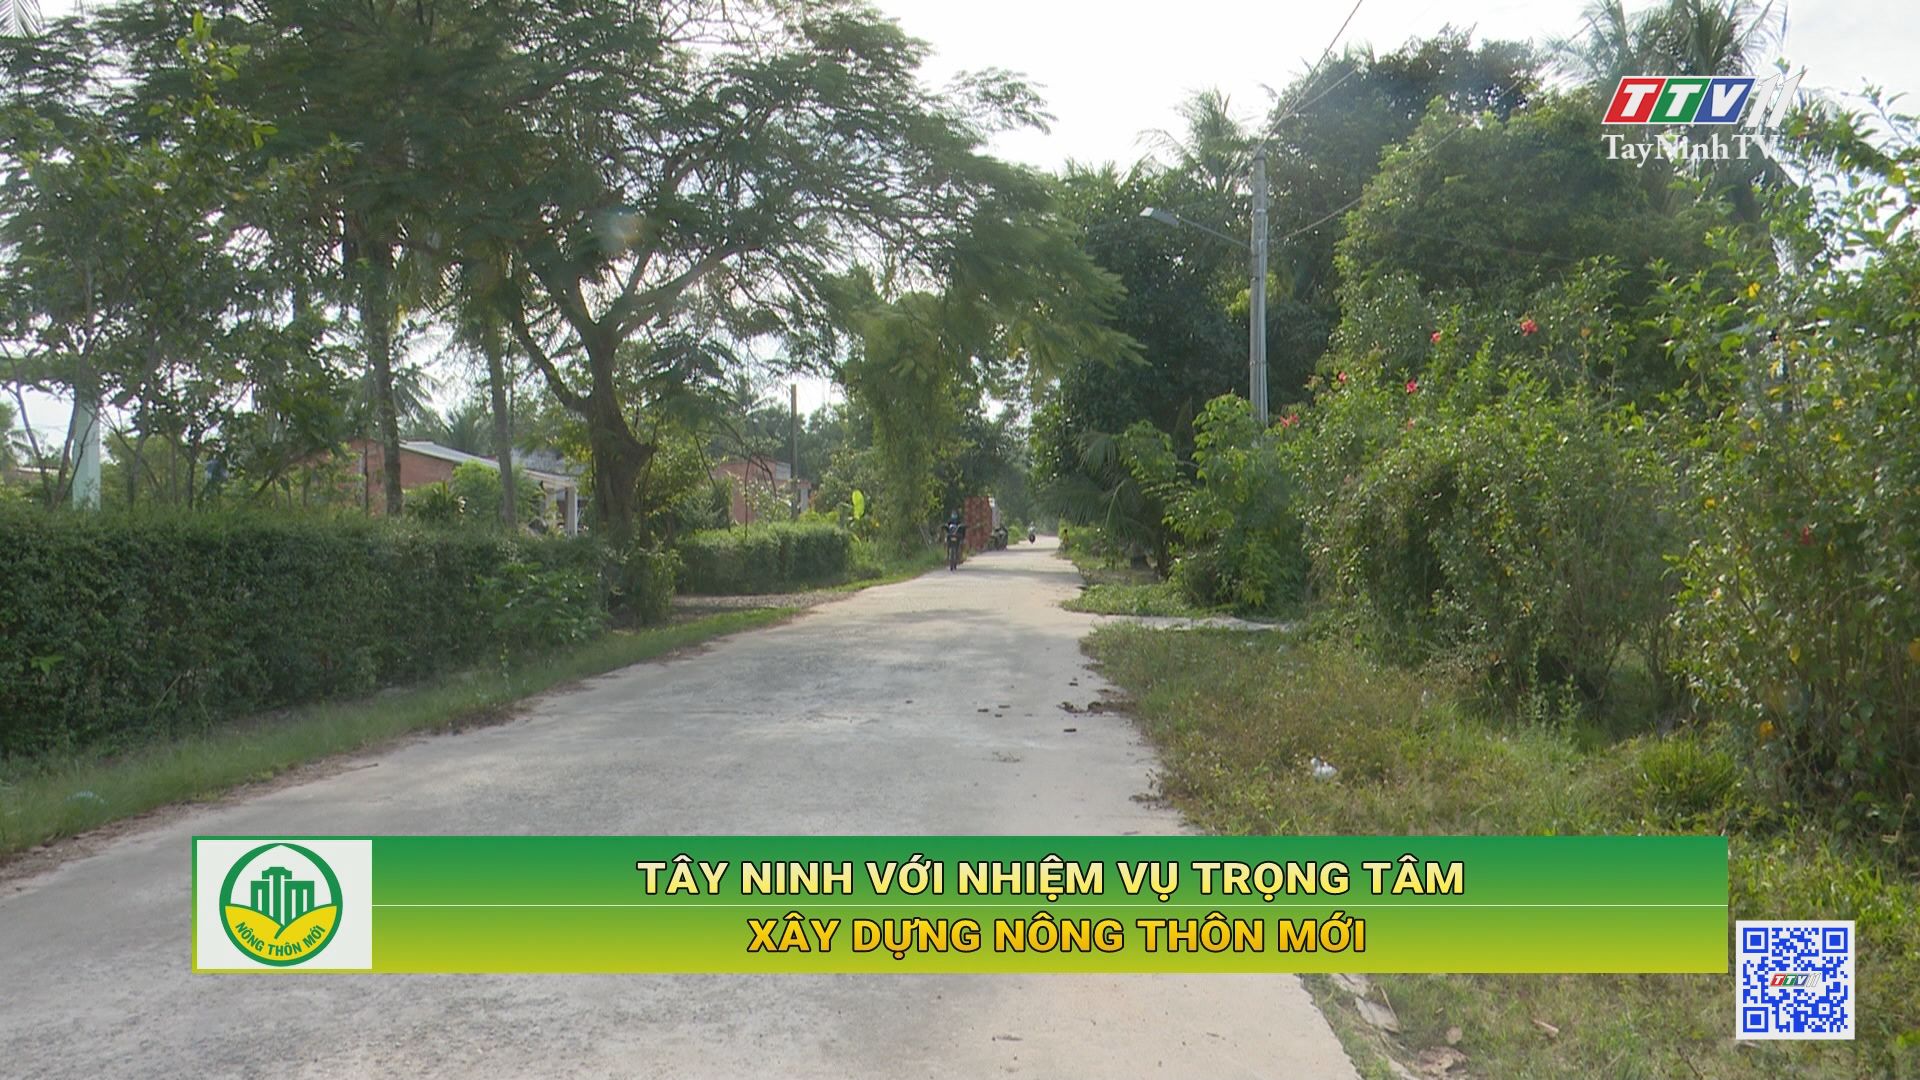 Tây Ninh với nhiệm vụ trọng tâm xây dựng nông thôn mới | TayNinhTV